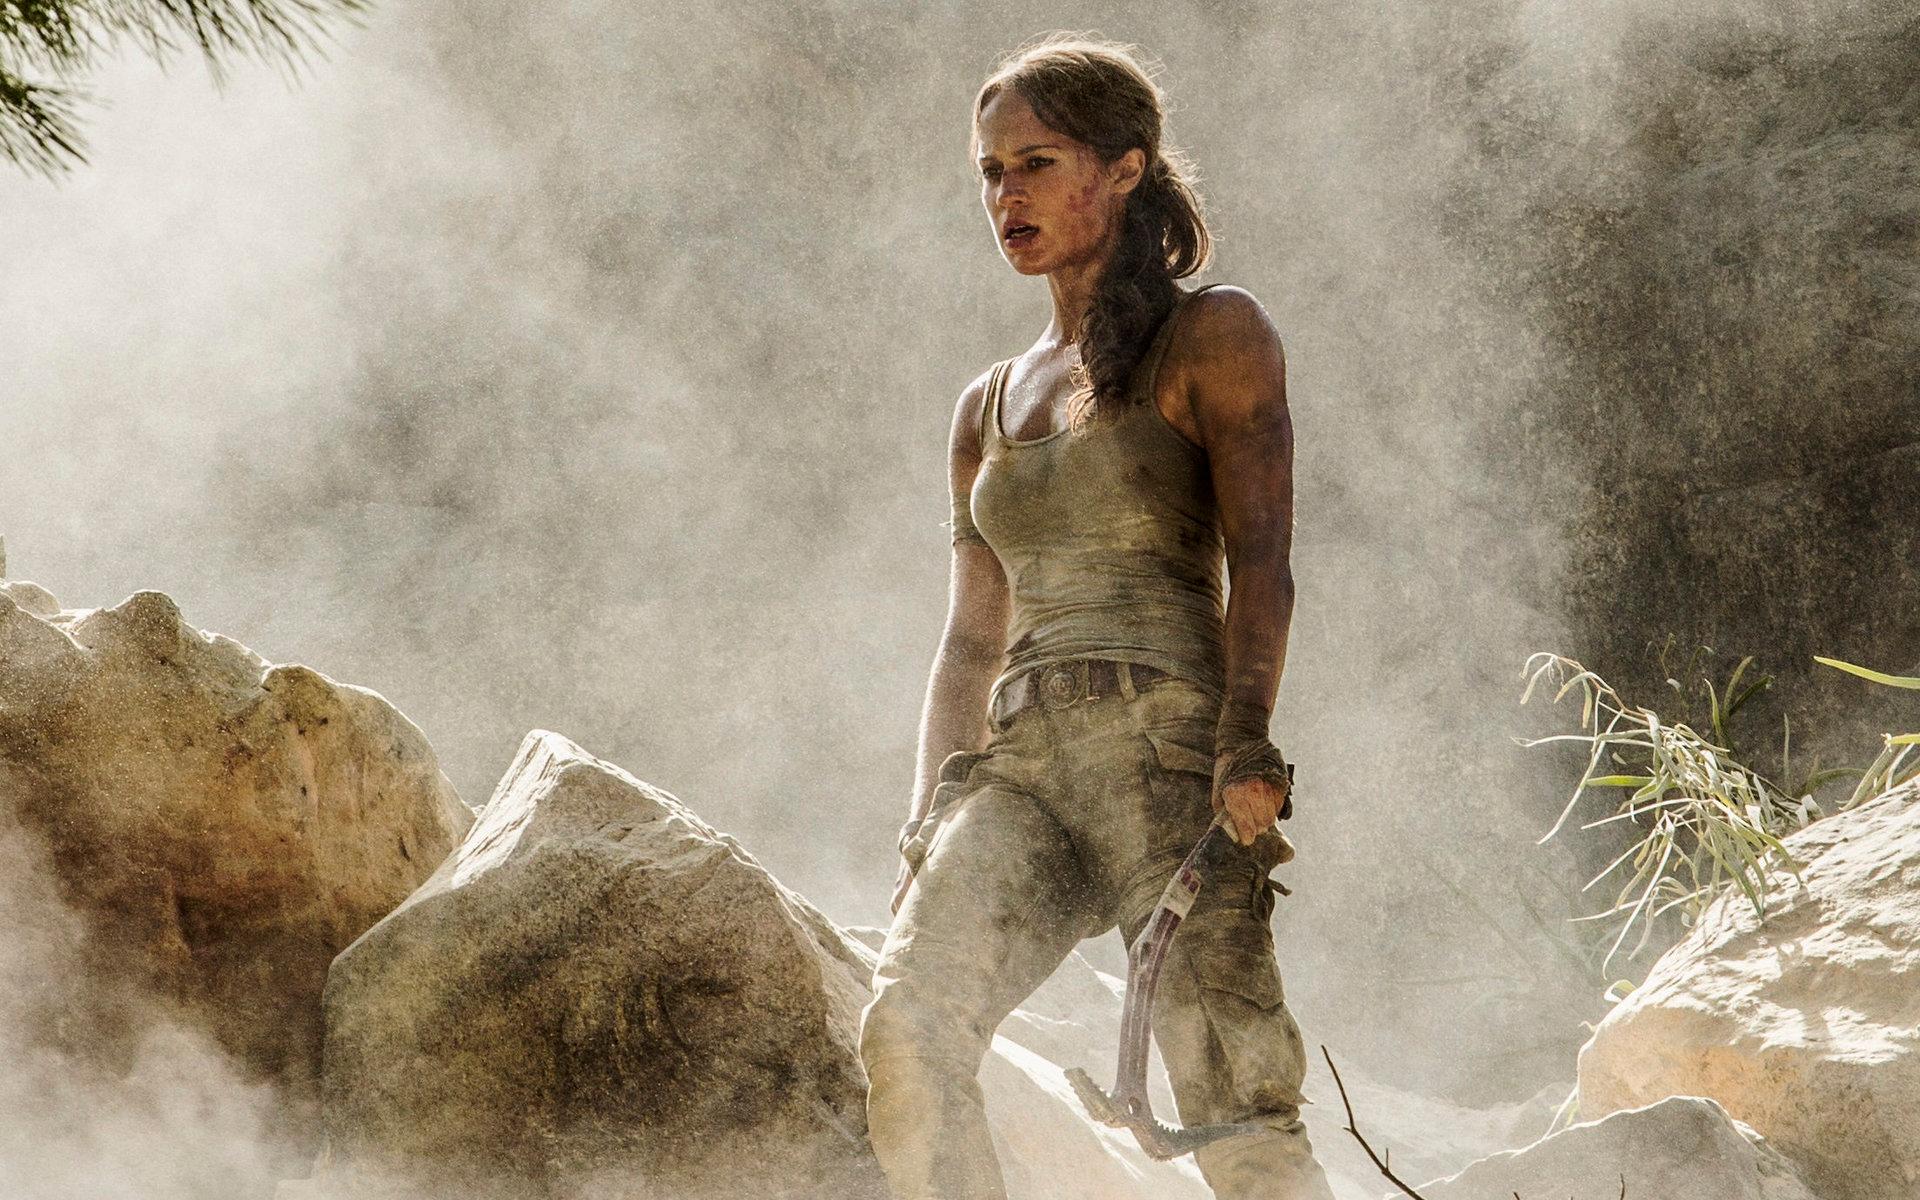 Hon har pendlat mellan smalare draman och blockbusters. Vikander gjorde exempelvis rollen som Lara Croft i en ny film om spelet ”Tomb raider” 2018. Tidigare har Angelina Jolie gjort samma roll.